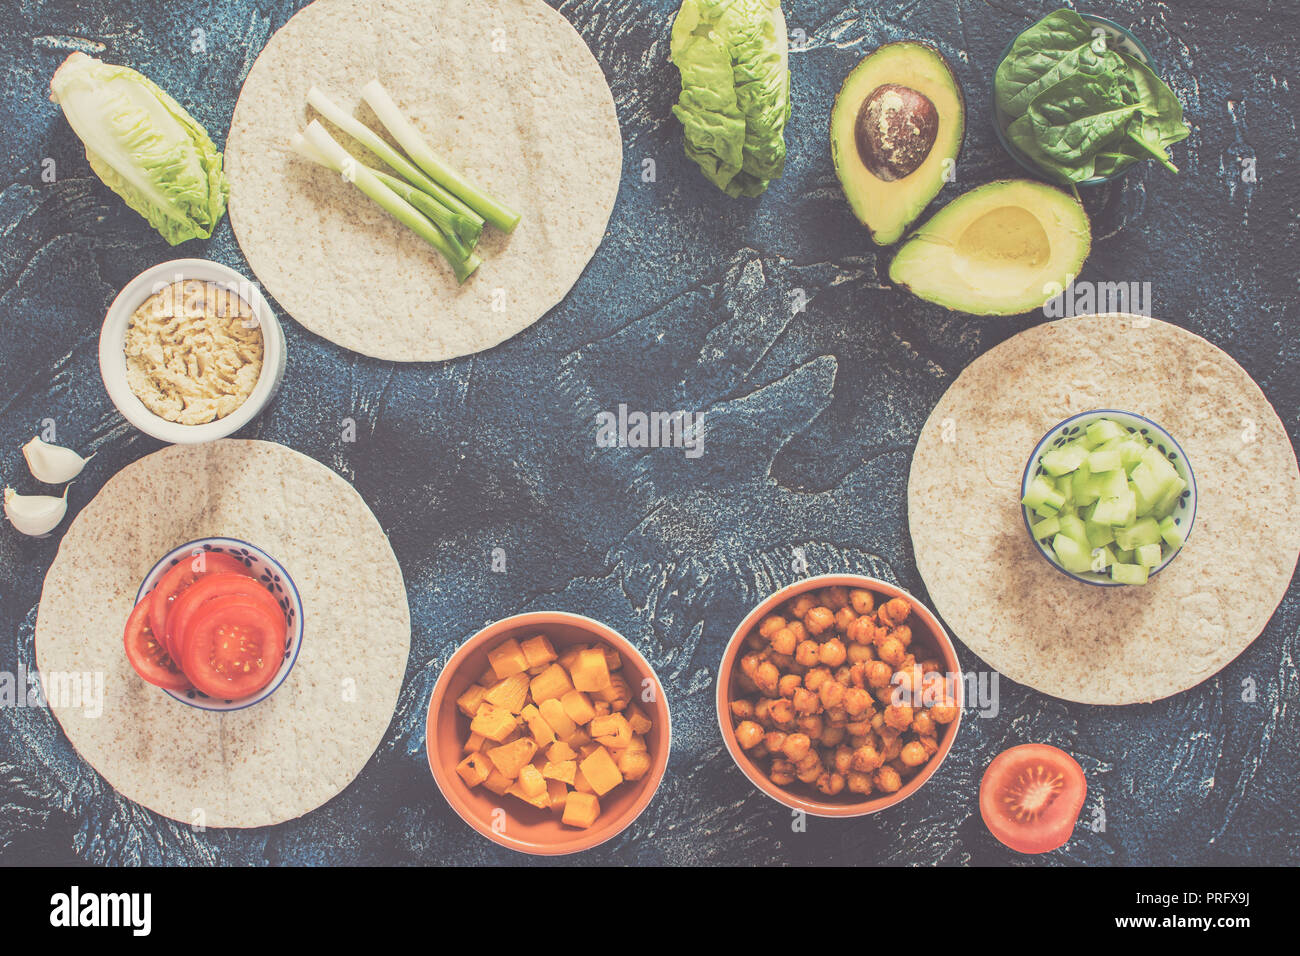 Ingrédients pour les tortillas vegan, pois chiches, oignons, courge, concombre, d'avocat sur le bleu foncé, vue de dessus de table Banque D'Images